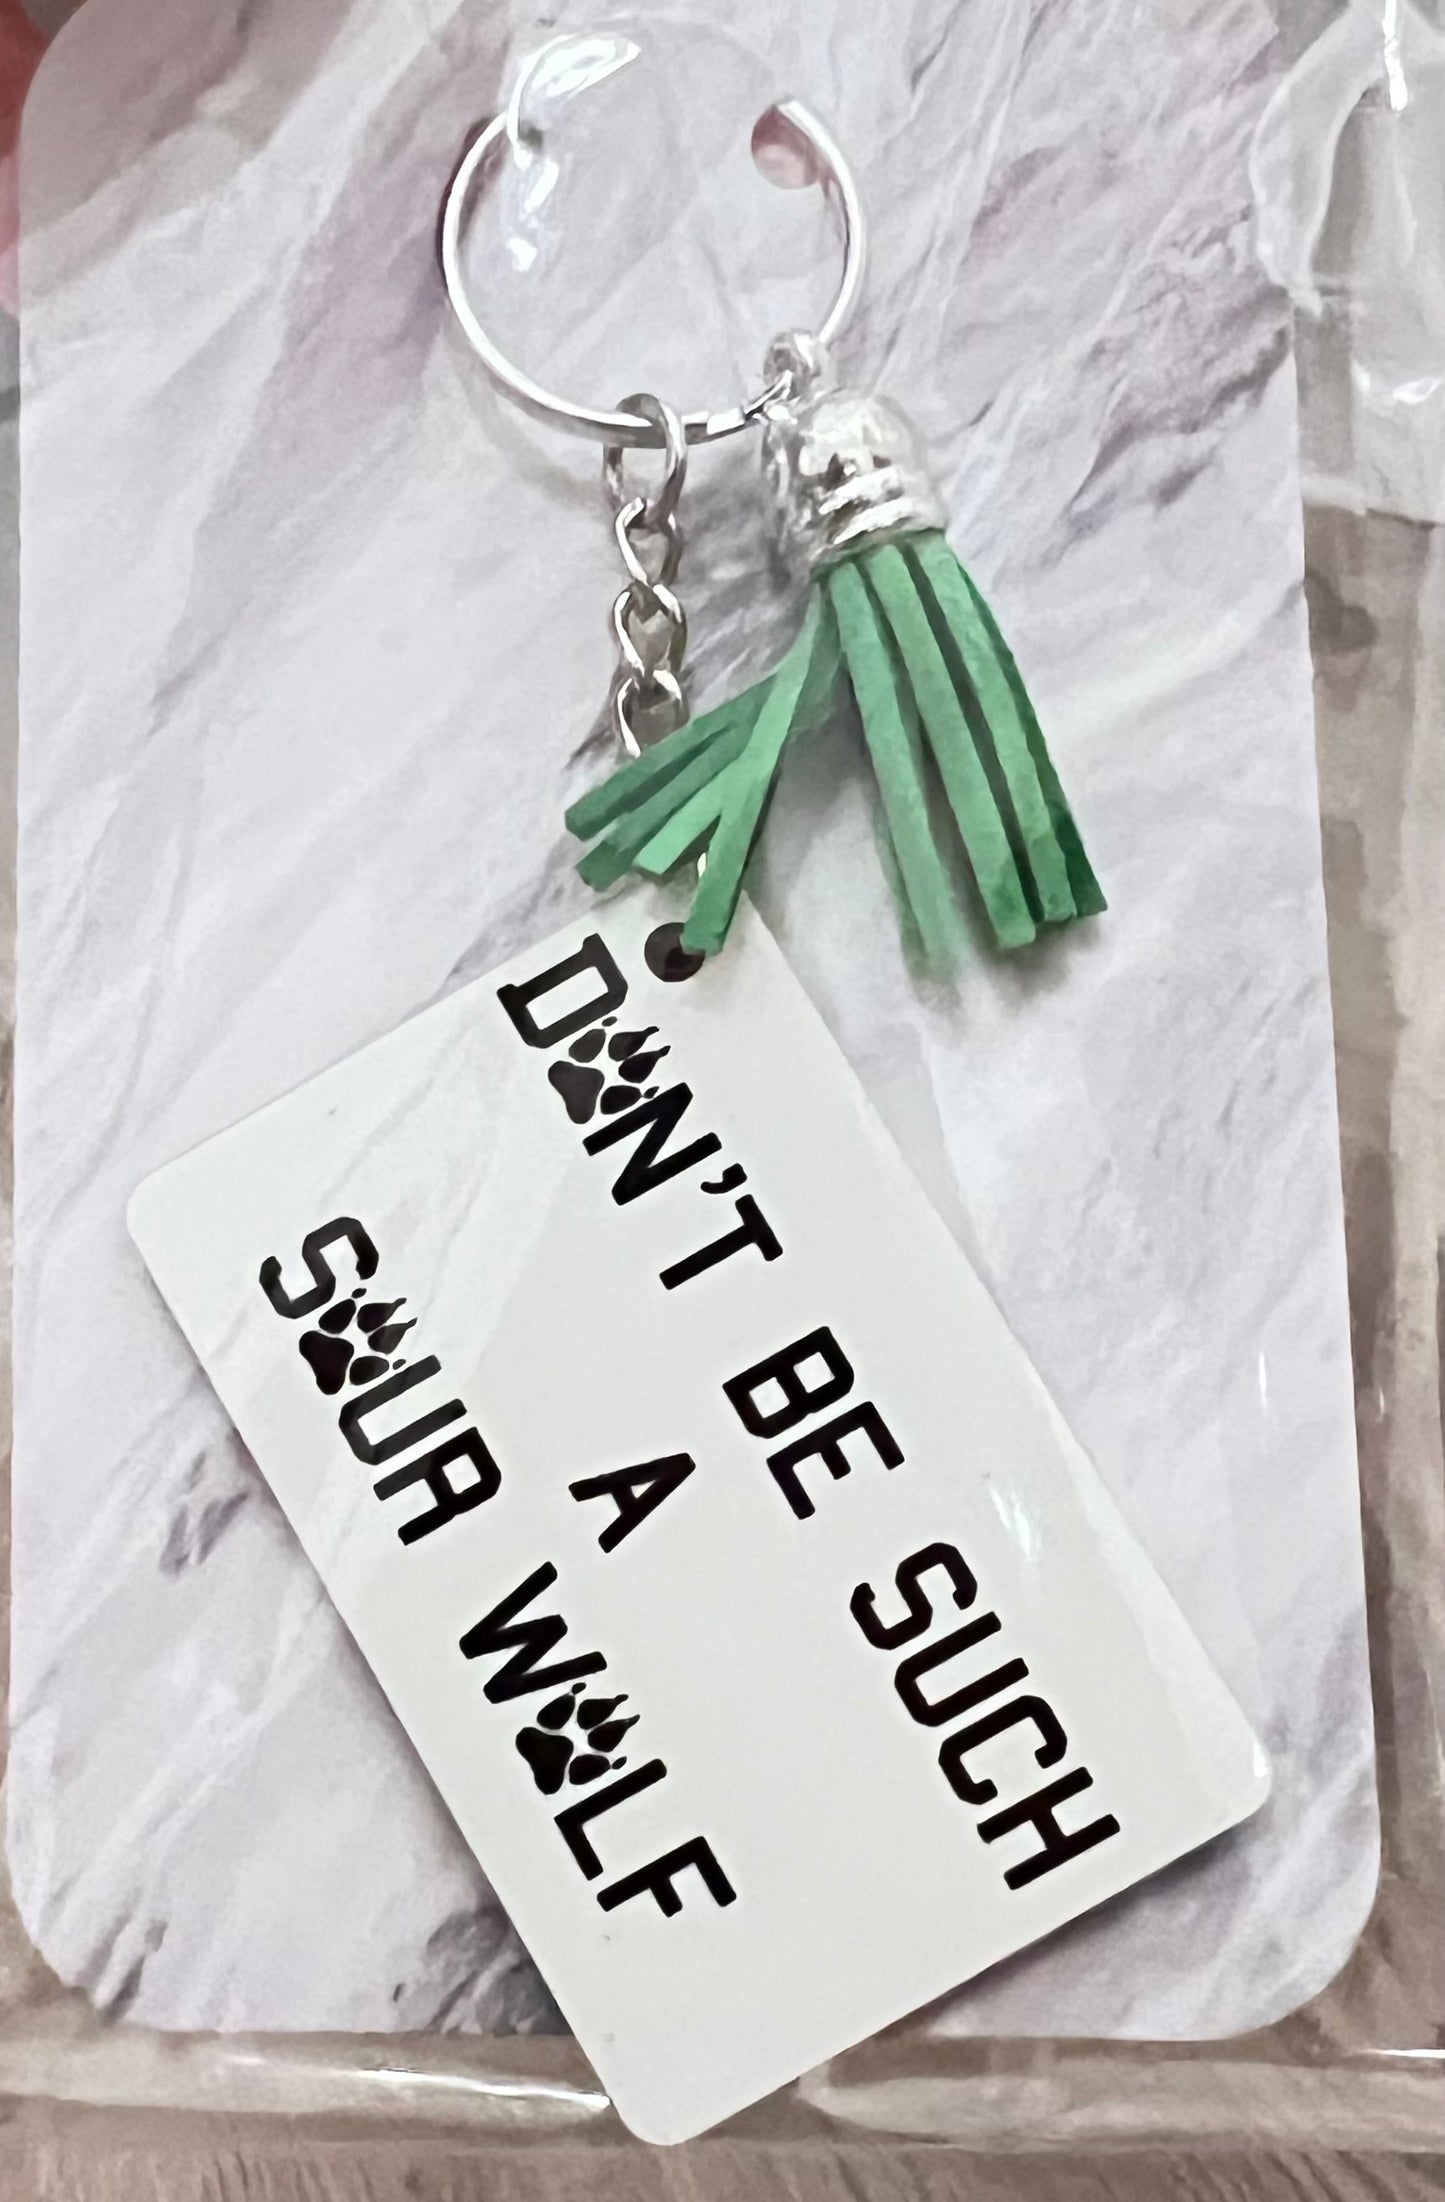 Sour Wolf Teen Wolf Keychain - Accessories